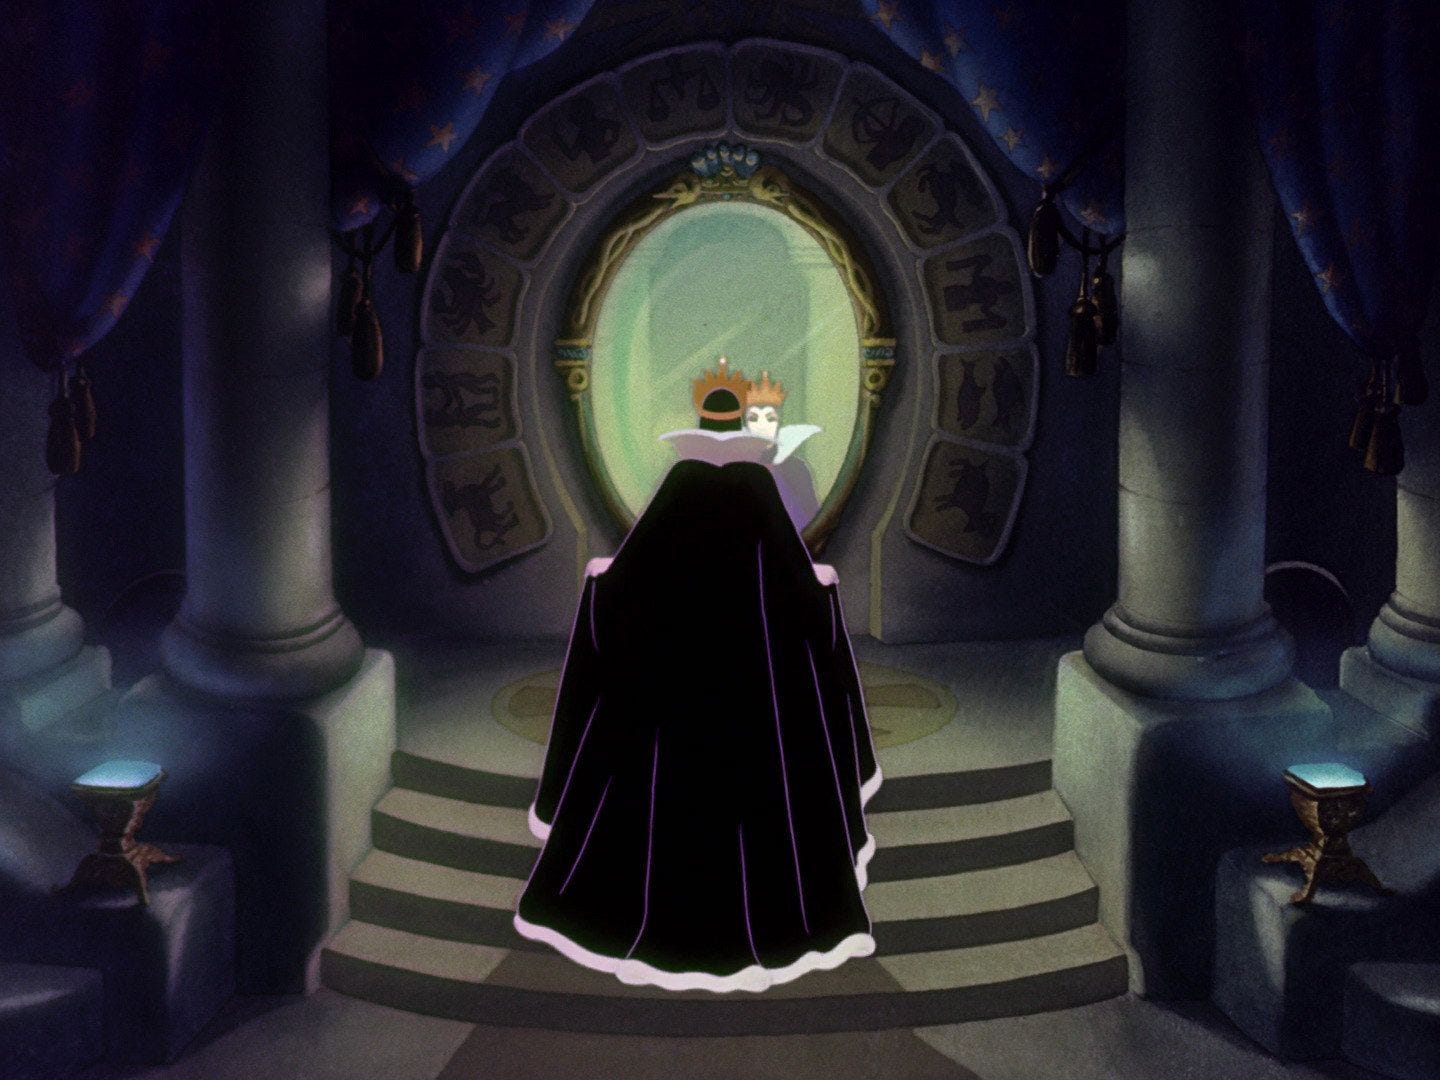 Scena del film animato Disney Biancaneve, in cui la regina, di spalle con indosso un mantello nero, si guarda allo specchio, circondato da segni zodiacali e due colonne